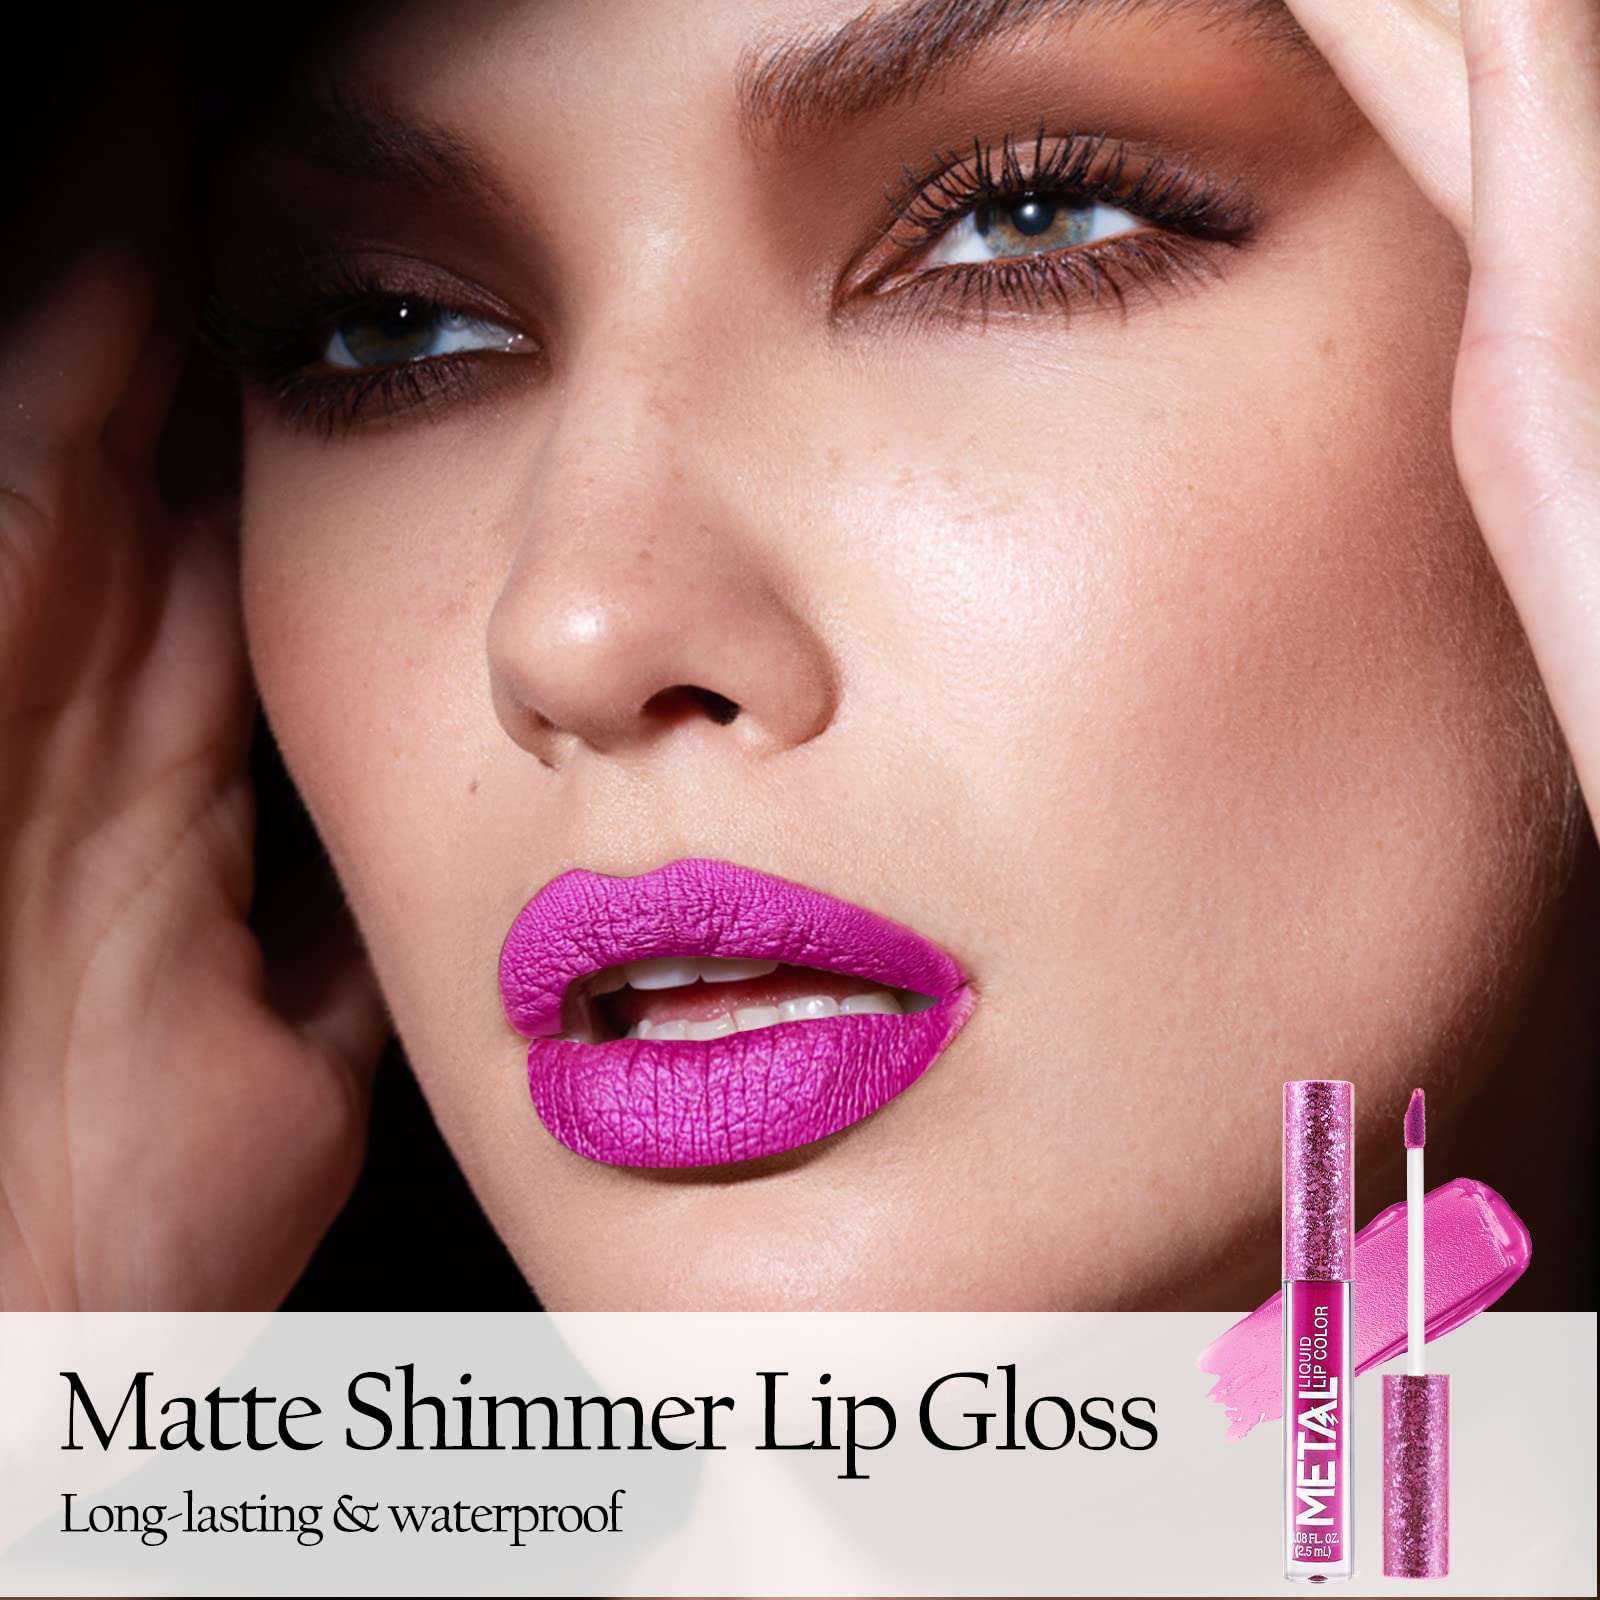 Boobeen Metallic Liquid Lipsticks Matte Lips Lipstick Pearl Glitter Lip Gloss High Pigment Long Lasting Nonstick Lip Glaze Makeup for Women and Girls (C-06)